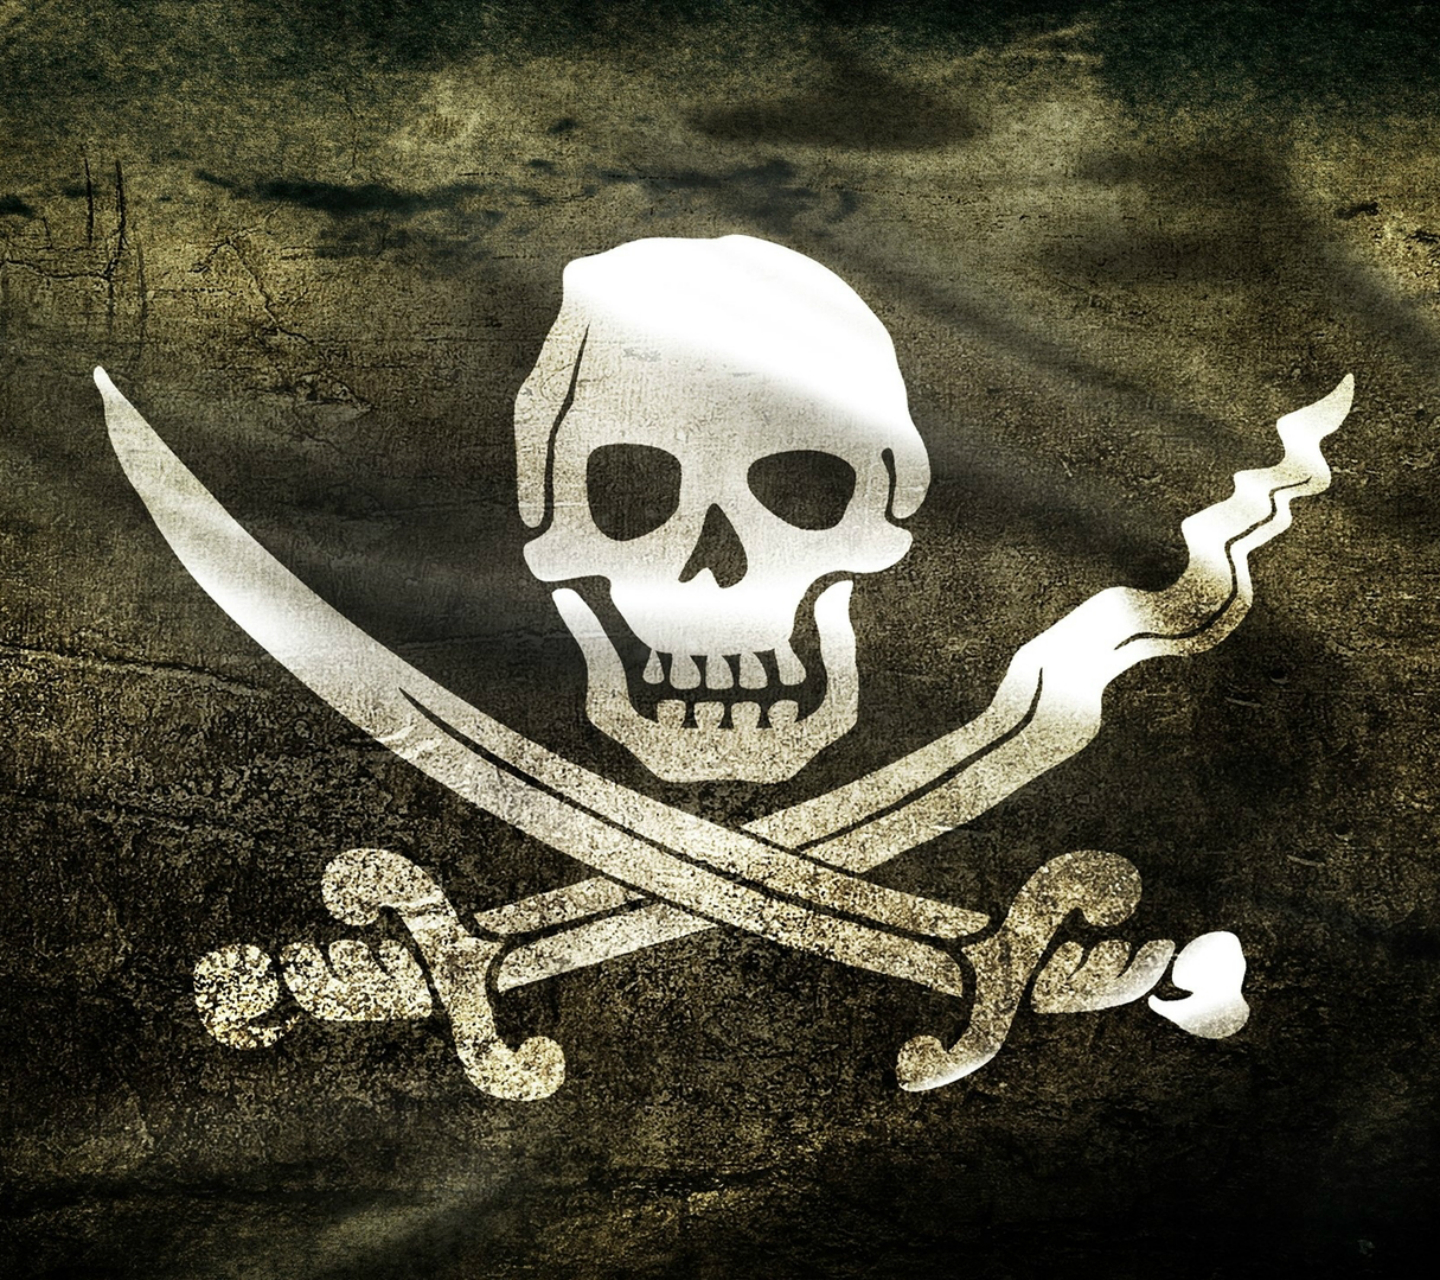 http://2.bp.blogspot.com/-fbe7gZY-CGE/UZDduOVXmcI/AAAAAAAAPr4/O_K3xZvMbcs/s1600/pirate_skull_flag_wallpaper_hd-HD.jpg